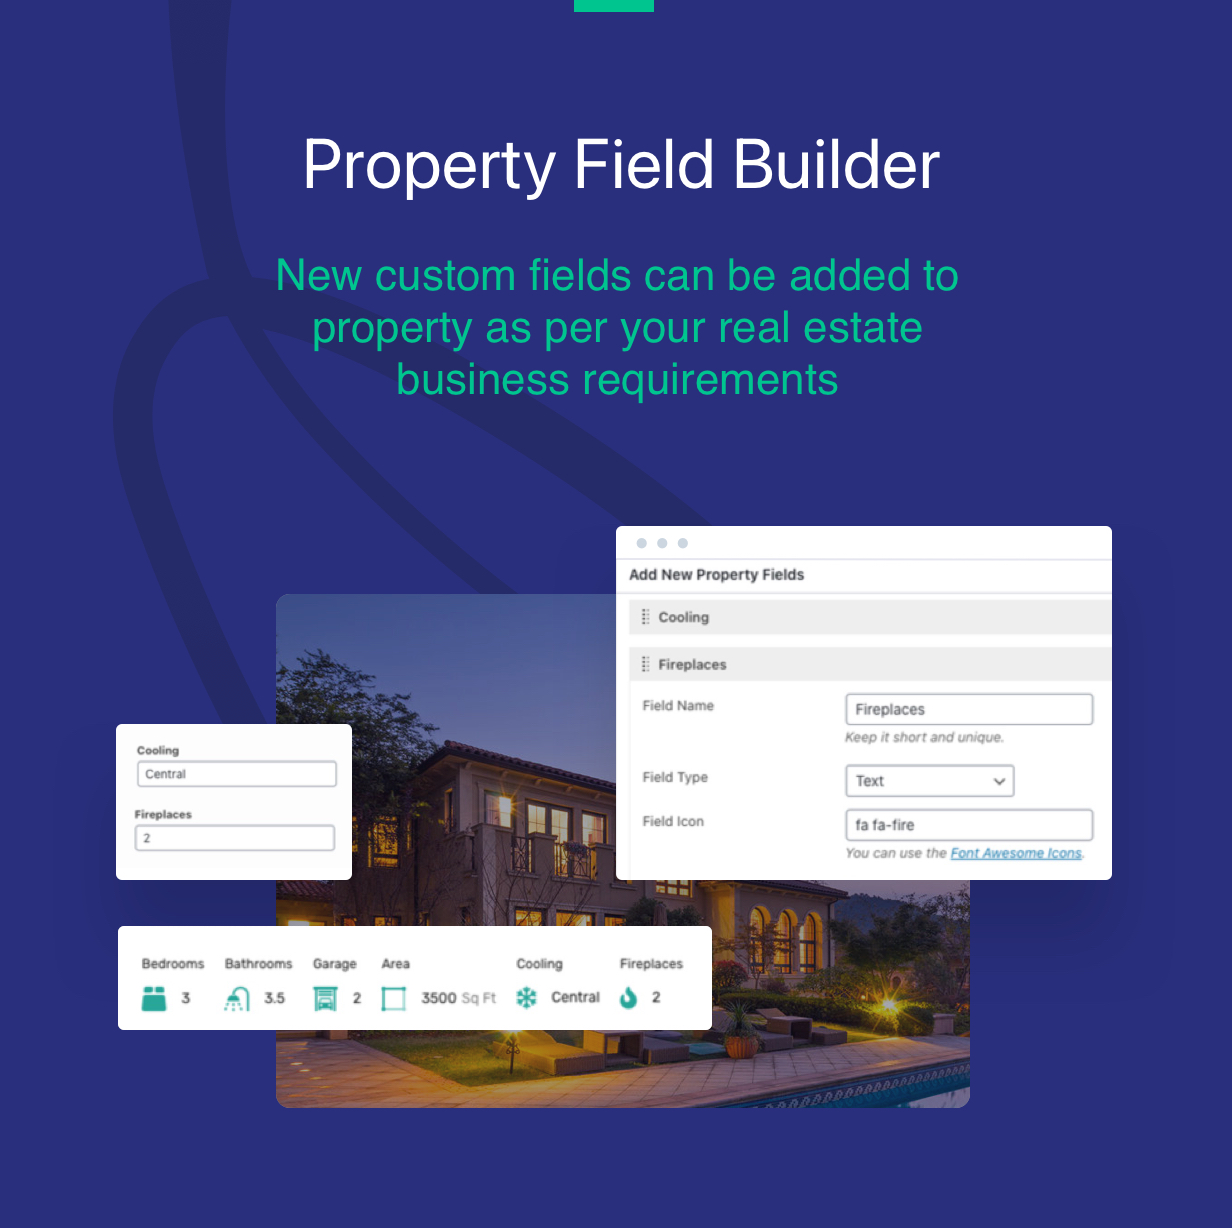 Generador de campos de propiedades inmobiliarias para agregar campos personalizados.